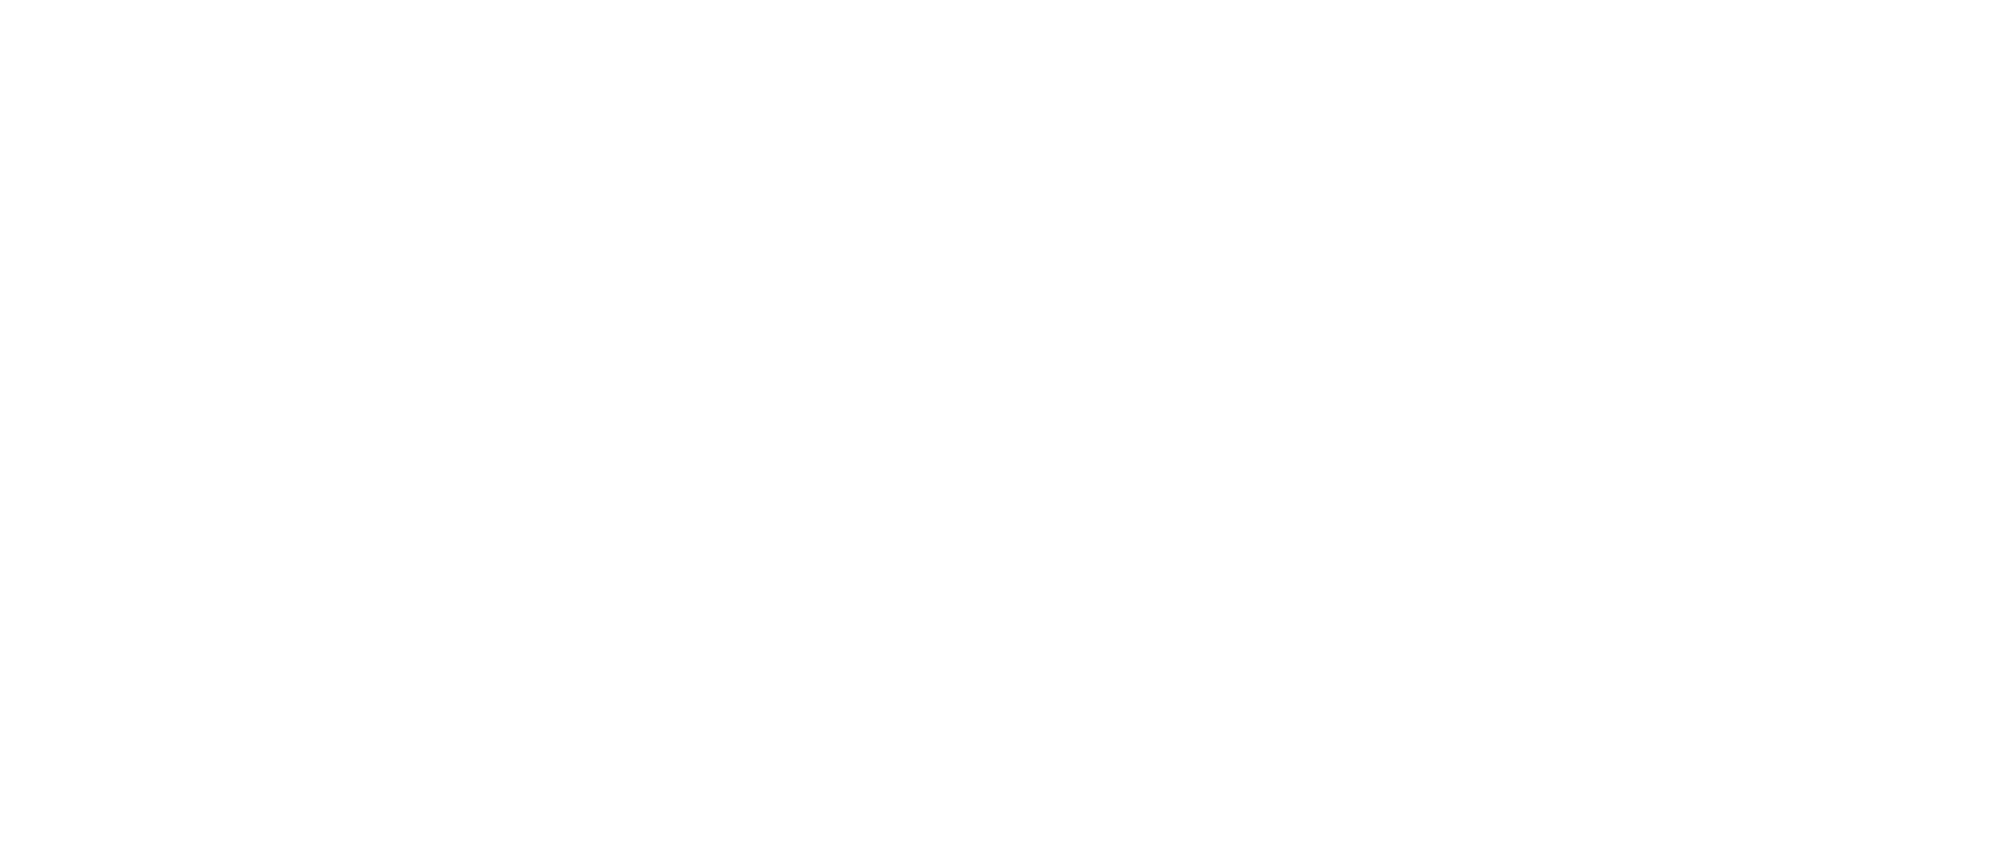 S.E.T Sanitation